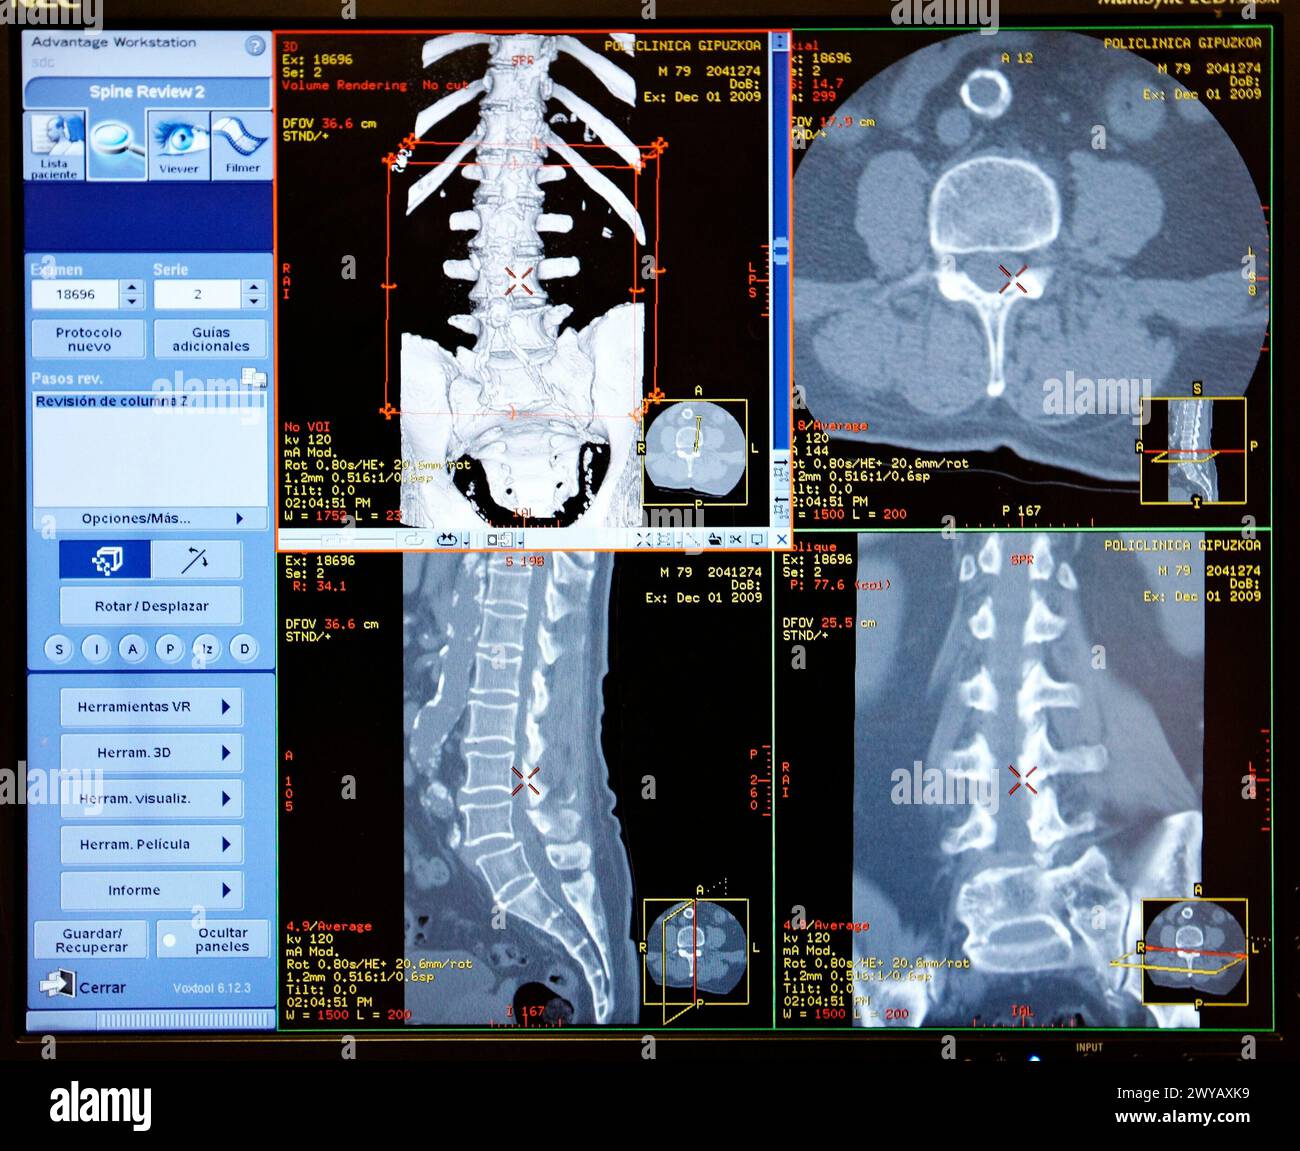 Acquisition HD (haute définition) de la colonne vertébrale, CAT, imagerie médicale pour le diagnostic. Hôpital Policlinica Gipuzkoa, Saint-Sébastien, Donostia, Euskadi, Espagne. Banque D'Images